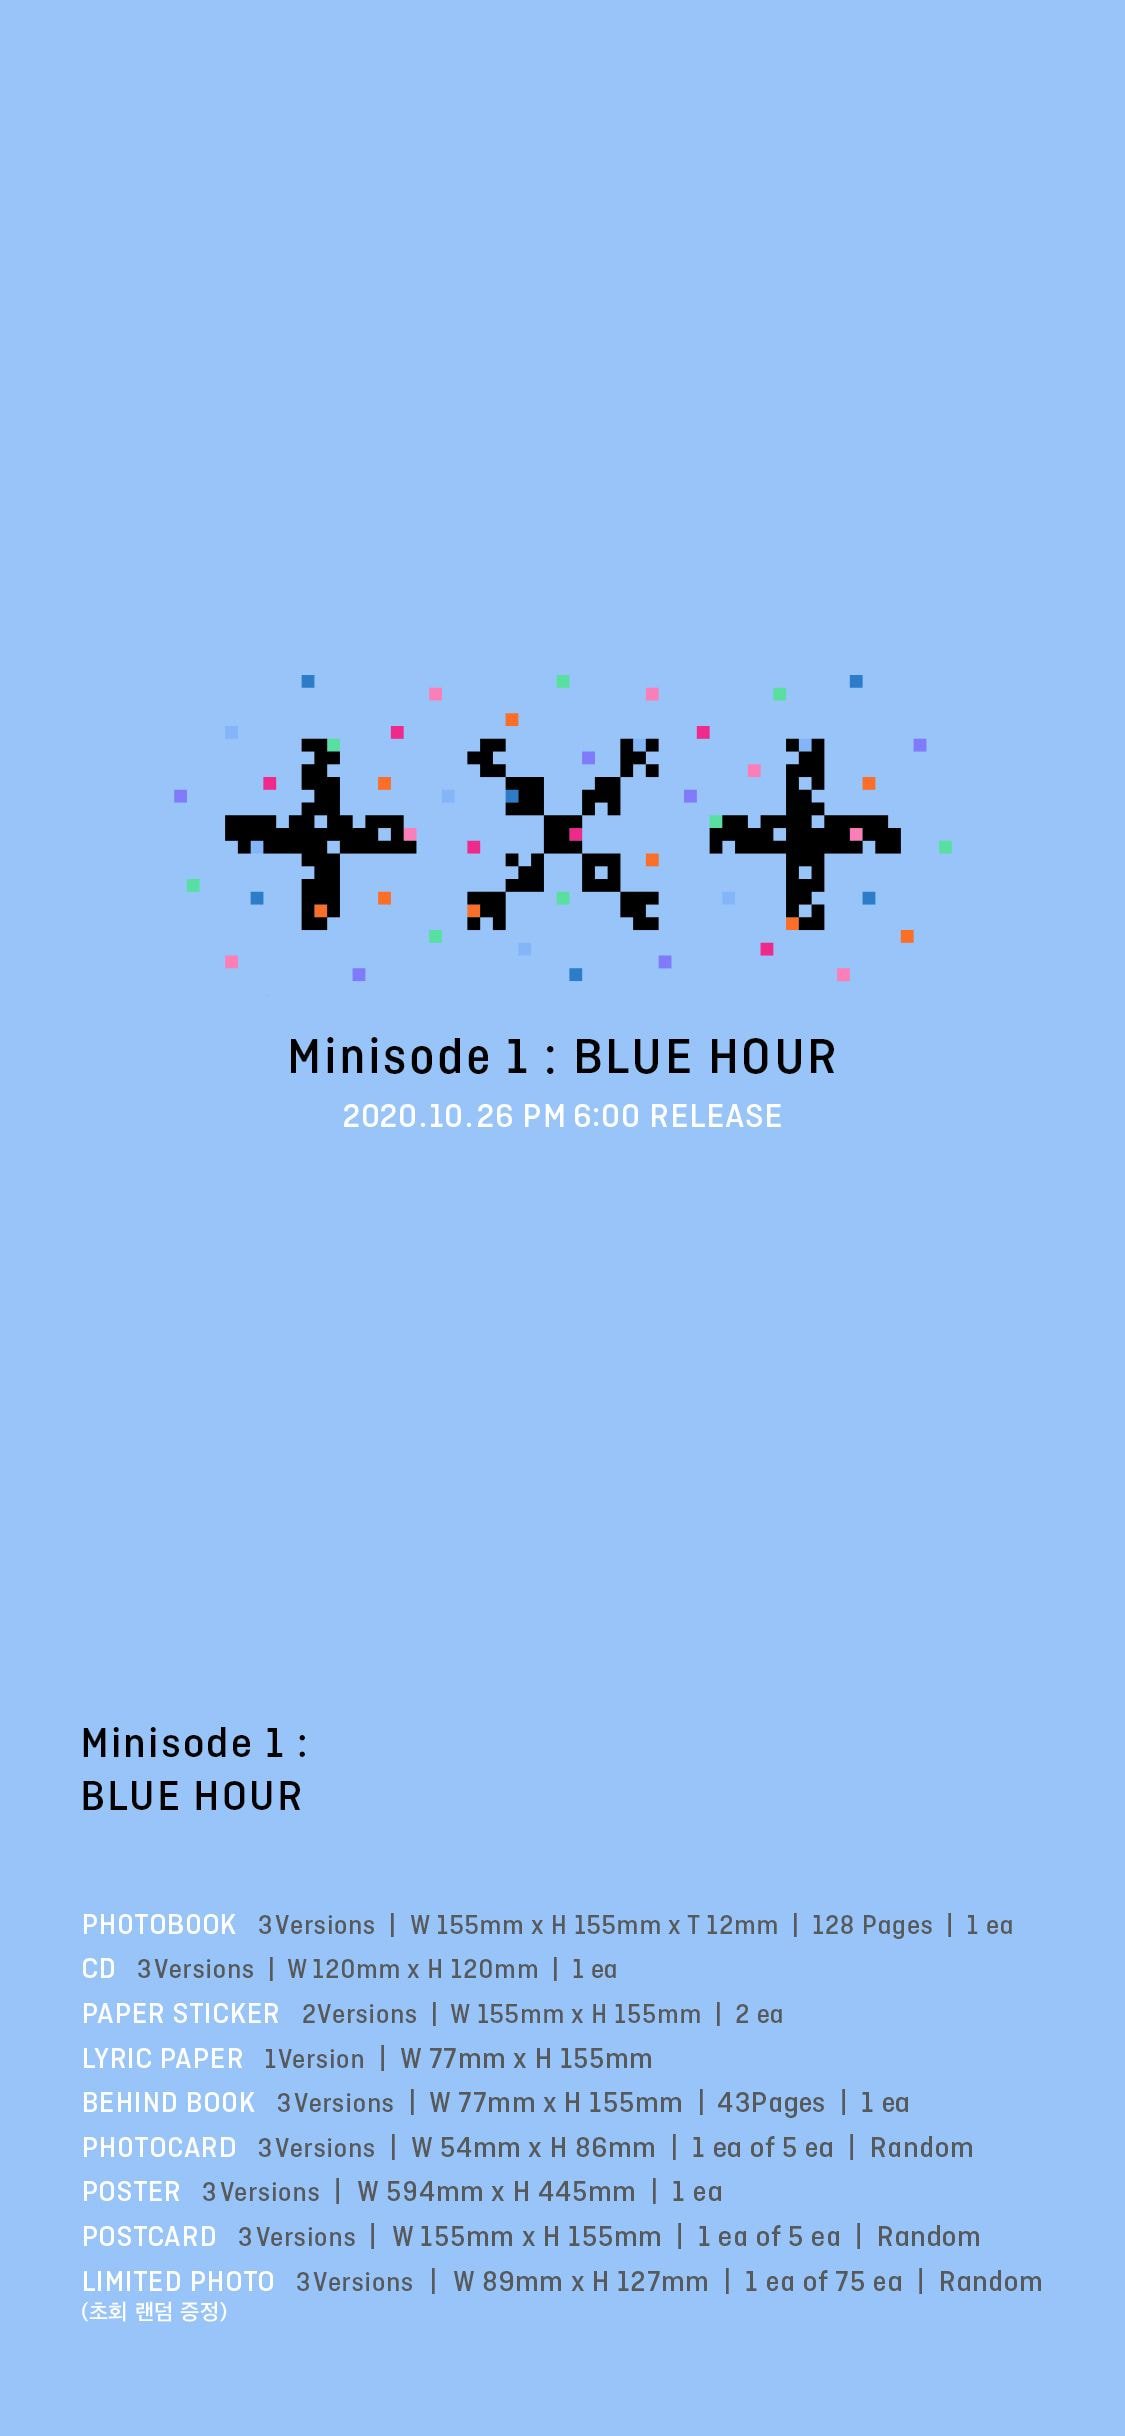 투모로우바이투게더 ‘minisode1 : Blue Hour’ 예약 구매 안내